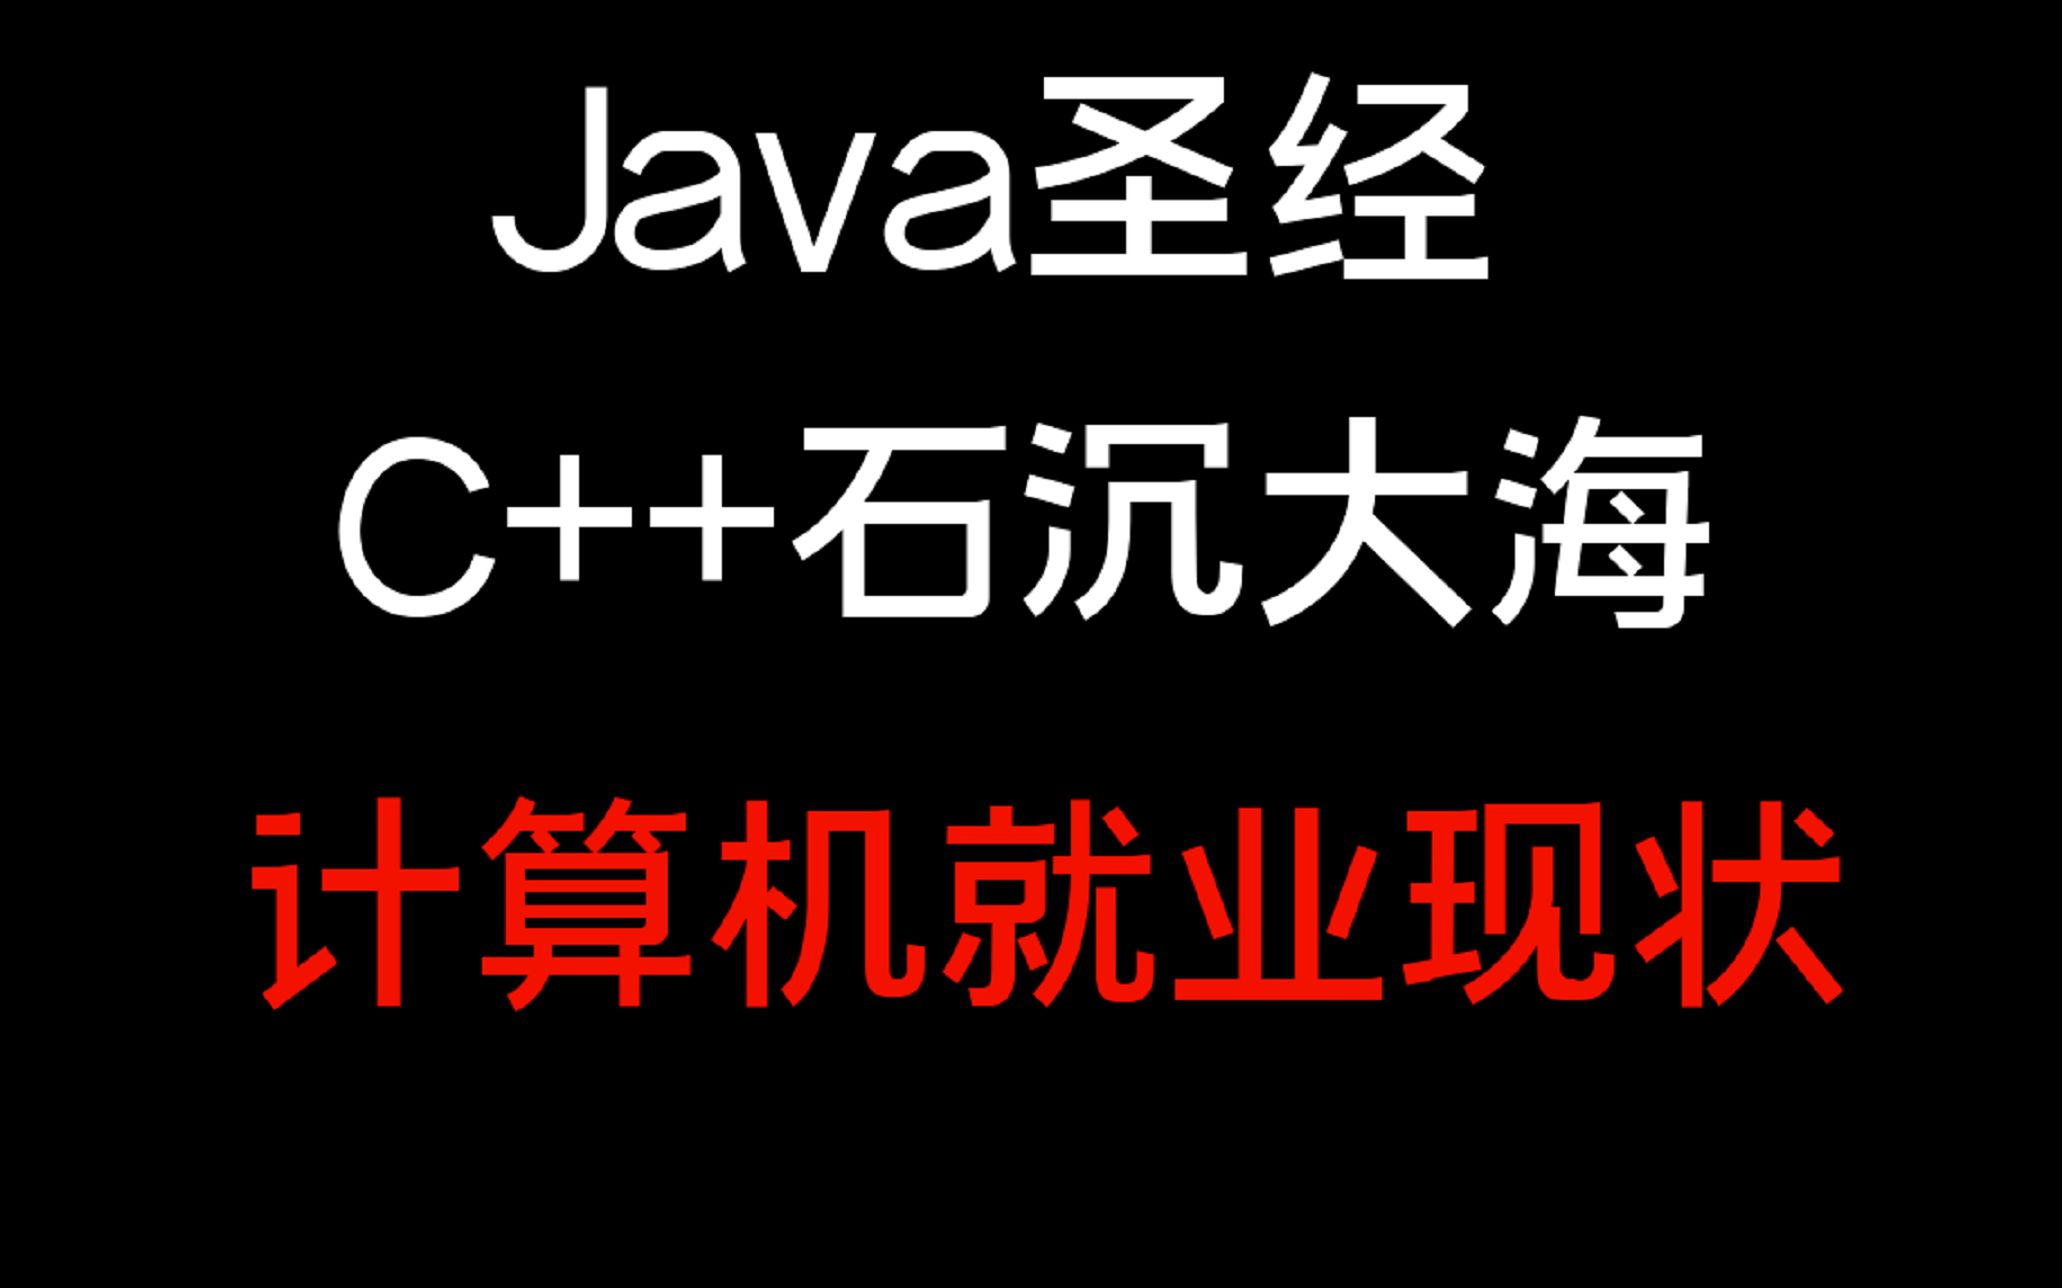 Java圣经 || C++石沉大海 || 算法卷麻，计算机就业现状，进来喝碗高汤